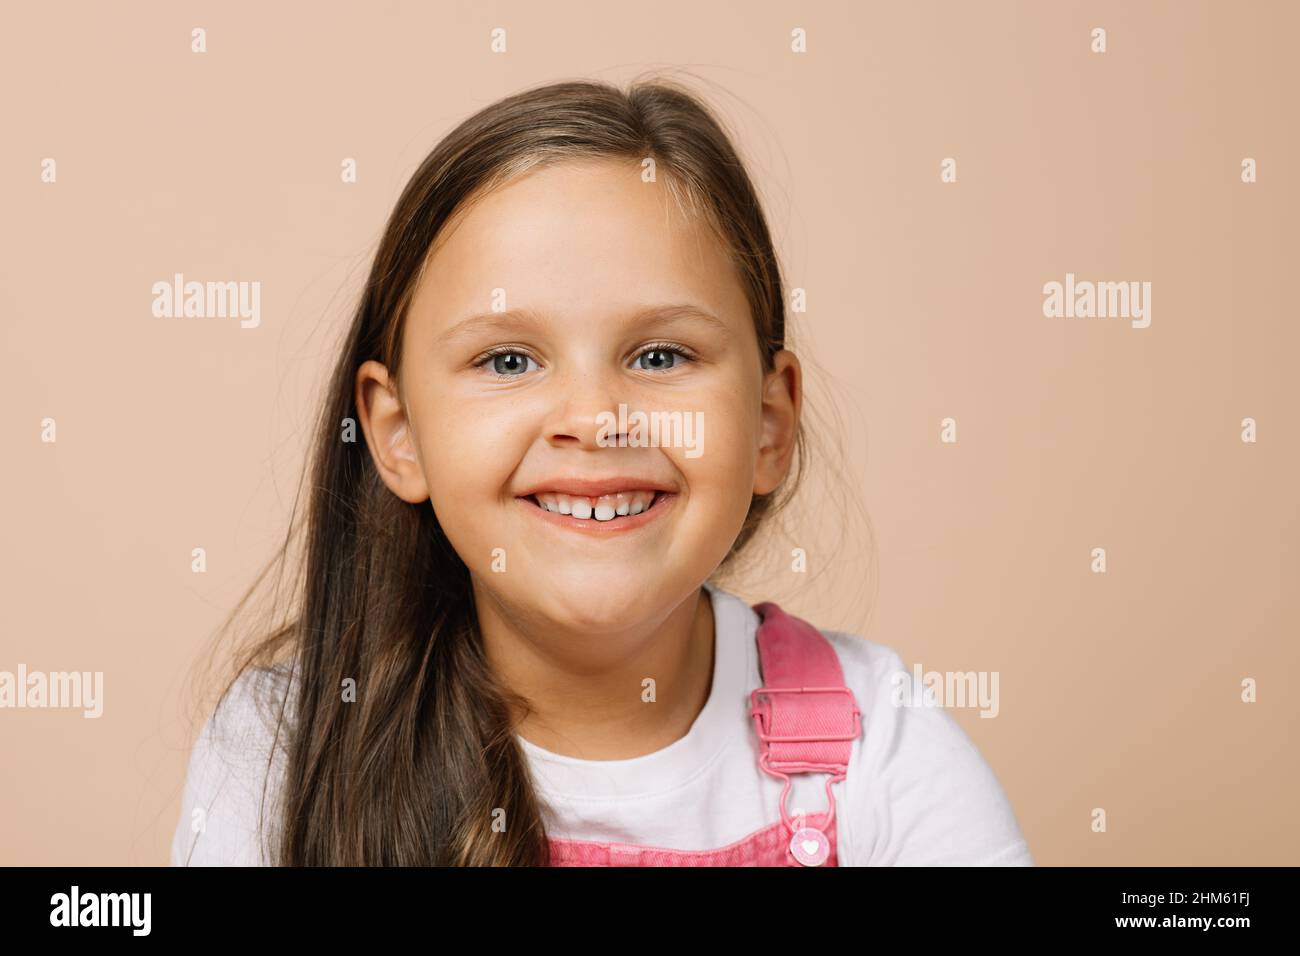 Ritratto del bambino con gli occhi luminosi e il sorriso felice eccitato con i denti superiori guardando la macchina fotografica che indossa il jumpsuit rosa brillante e la t-shirt bianca Foto Stock